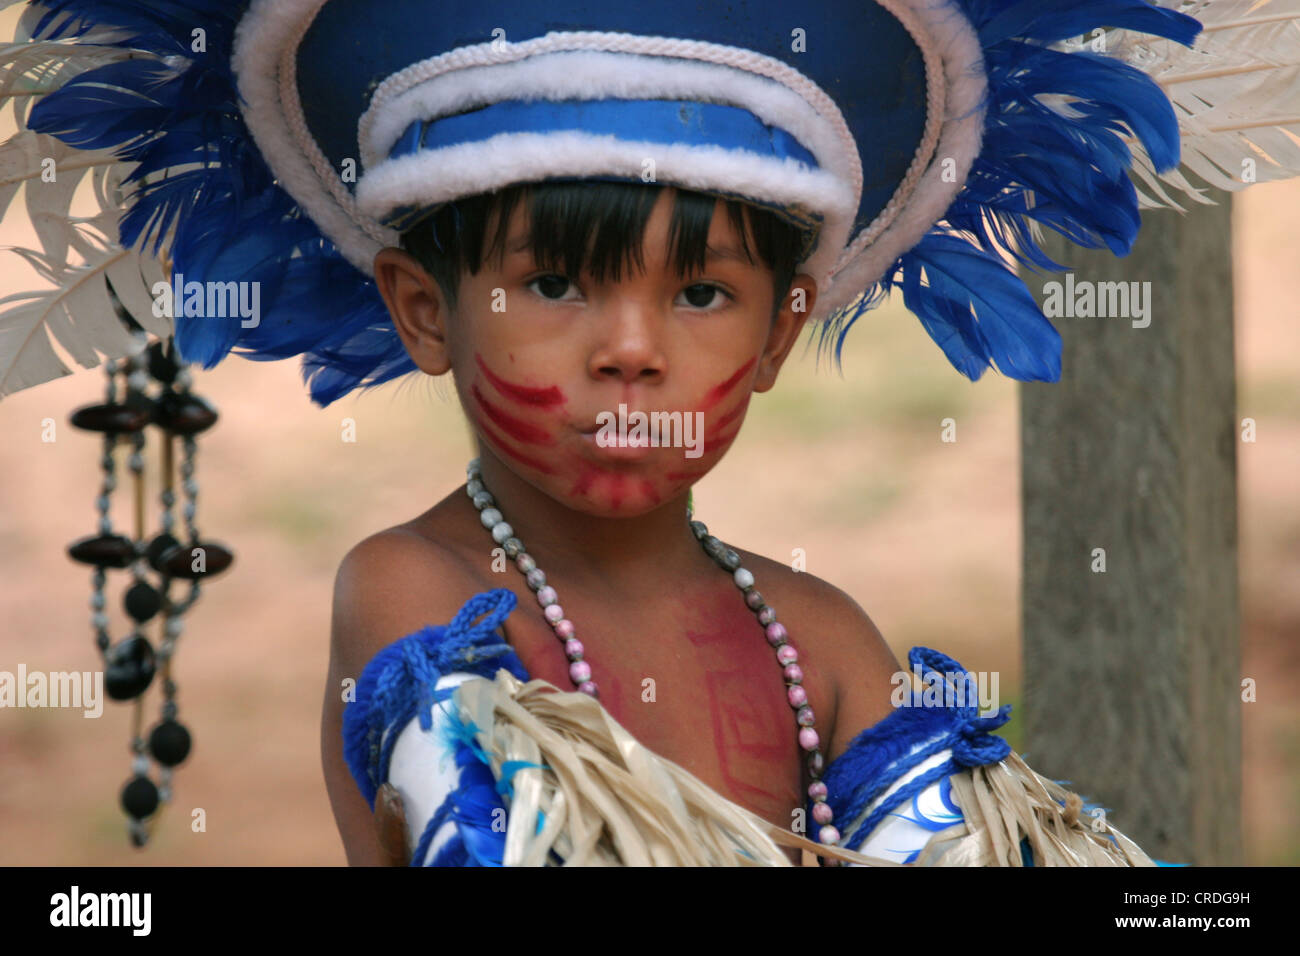 Jeune garçon habillé en tenue de cérémonie autochtone typique de la région amazonienne du Brésil Banque D'Images